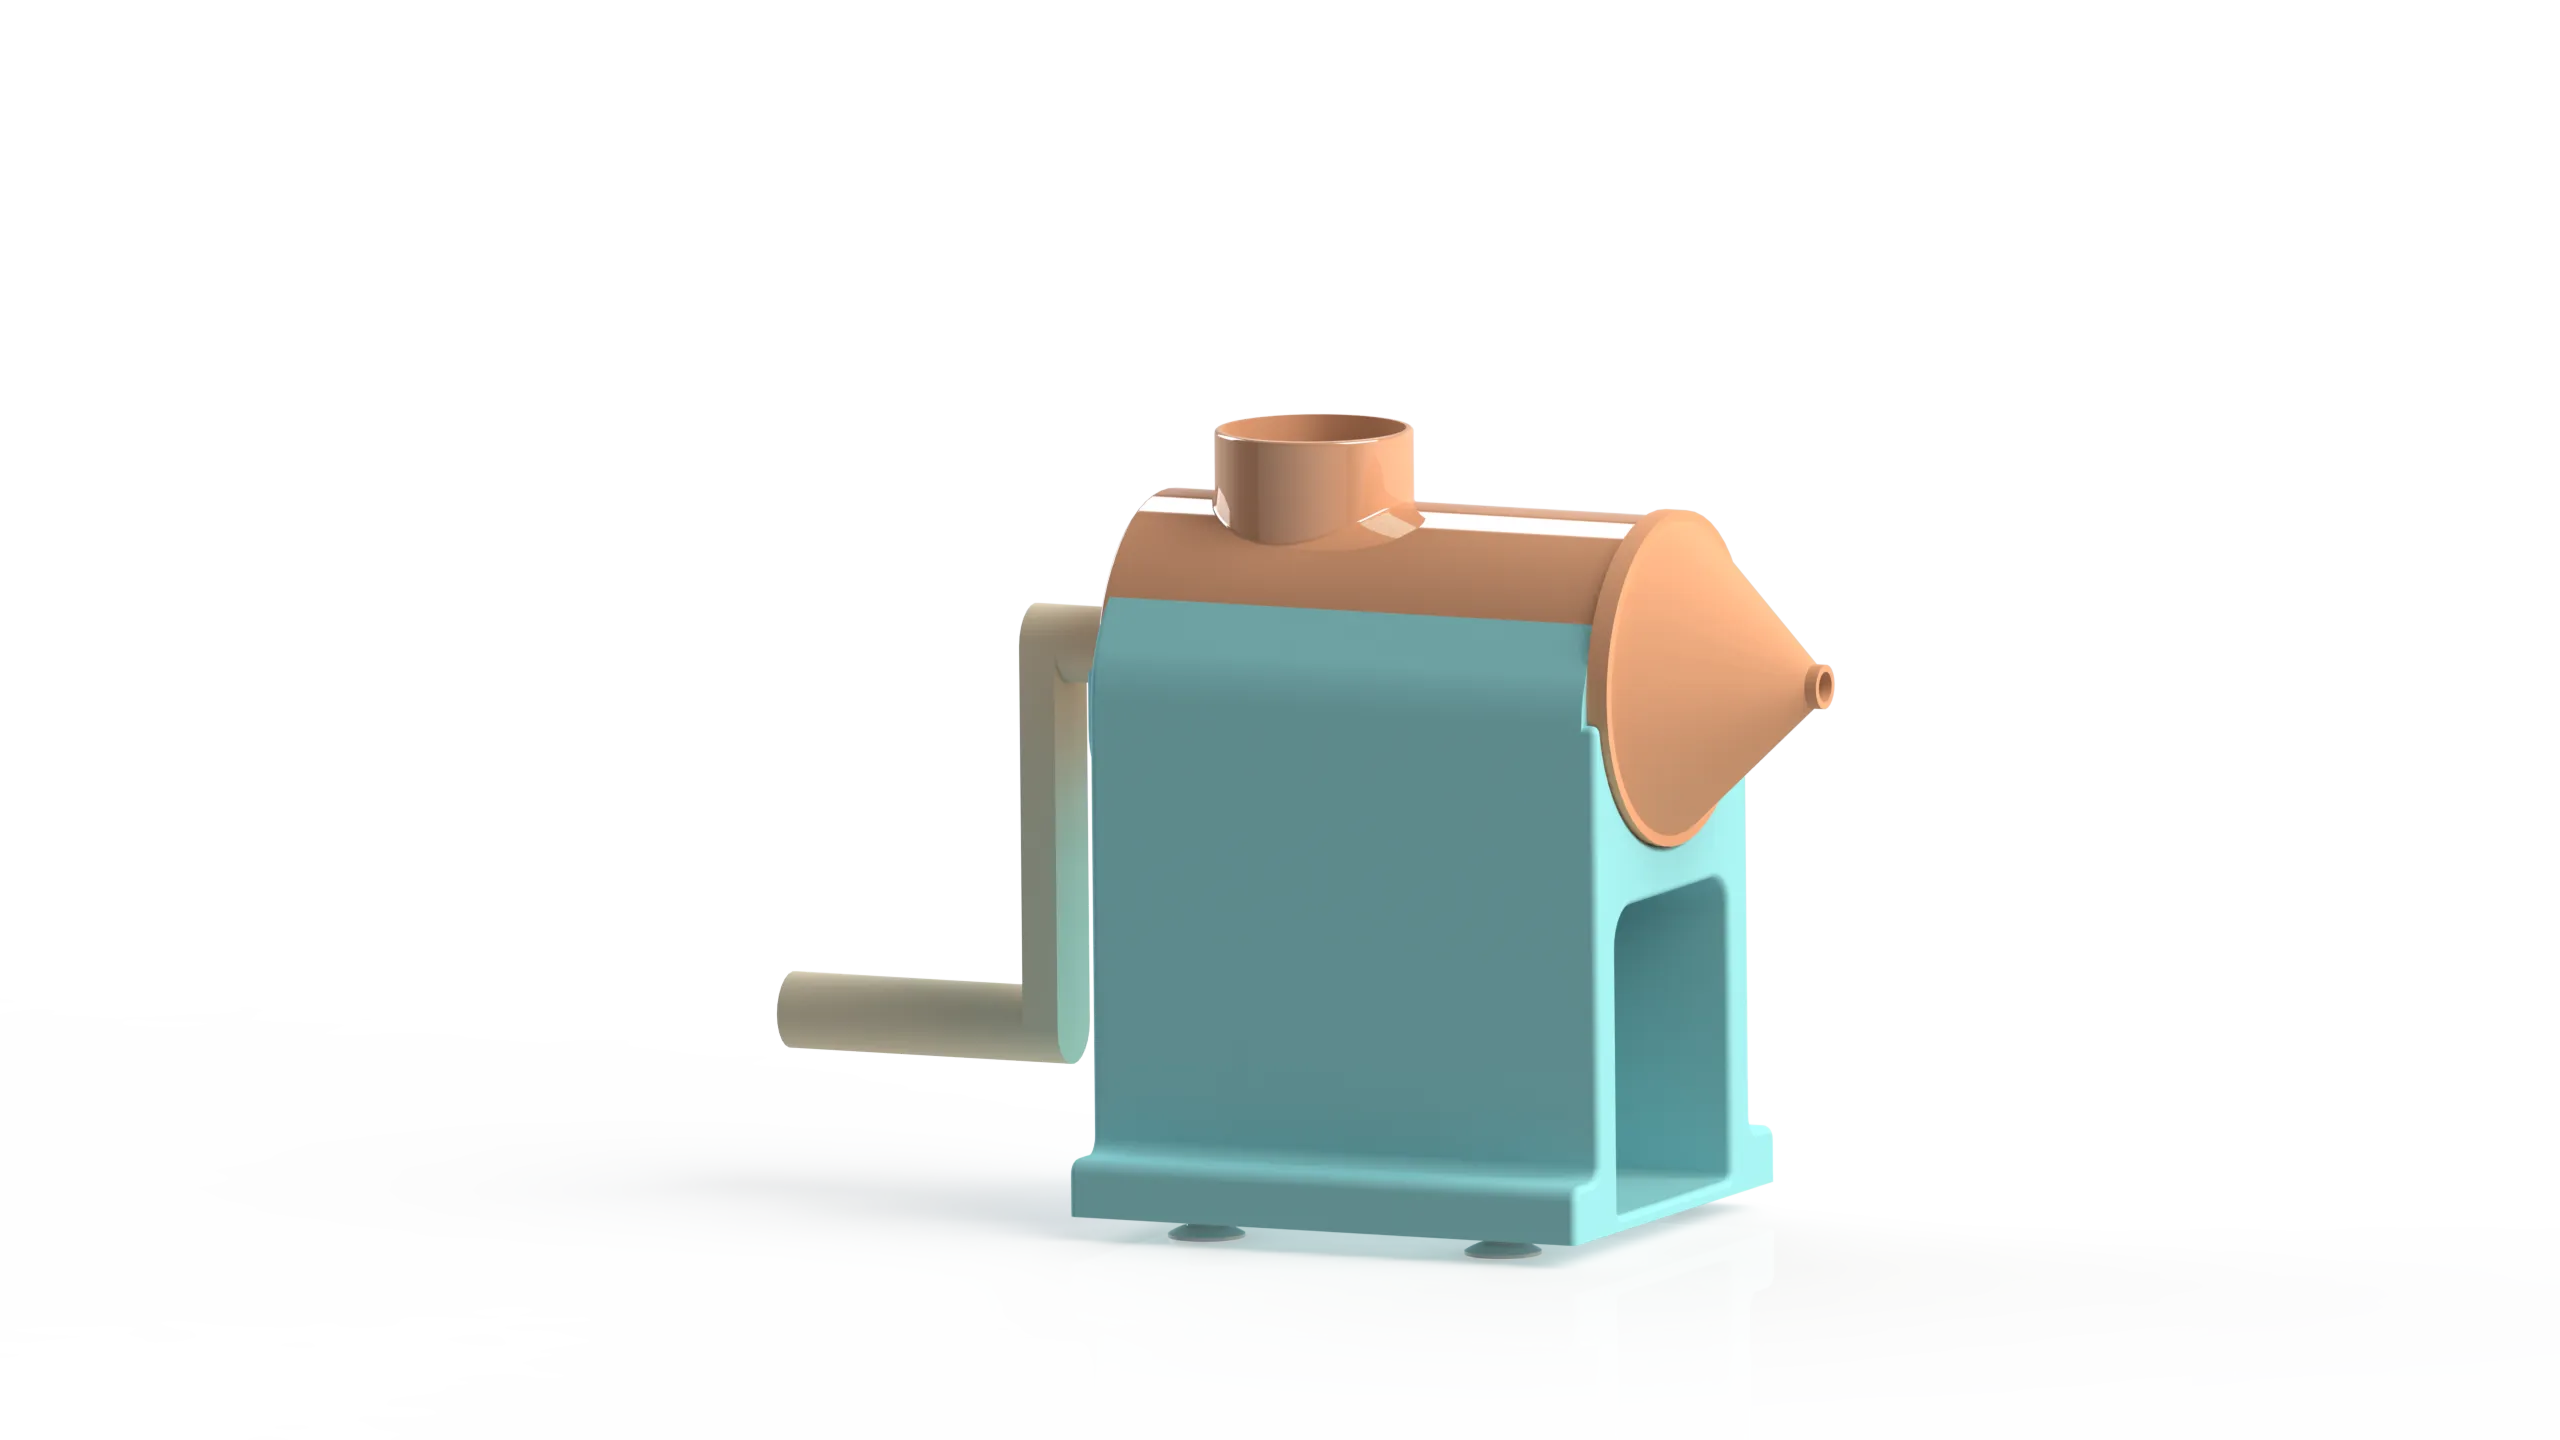 Render of 3D model of an auger fruit juicer